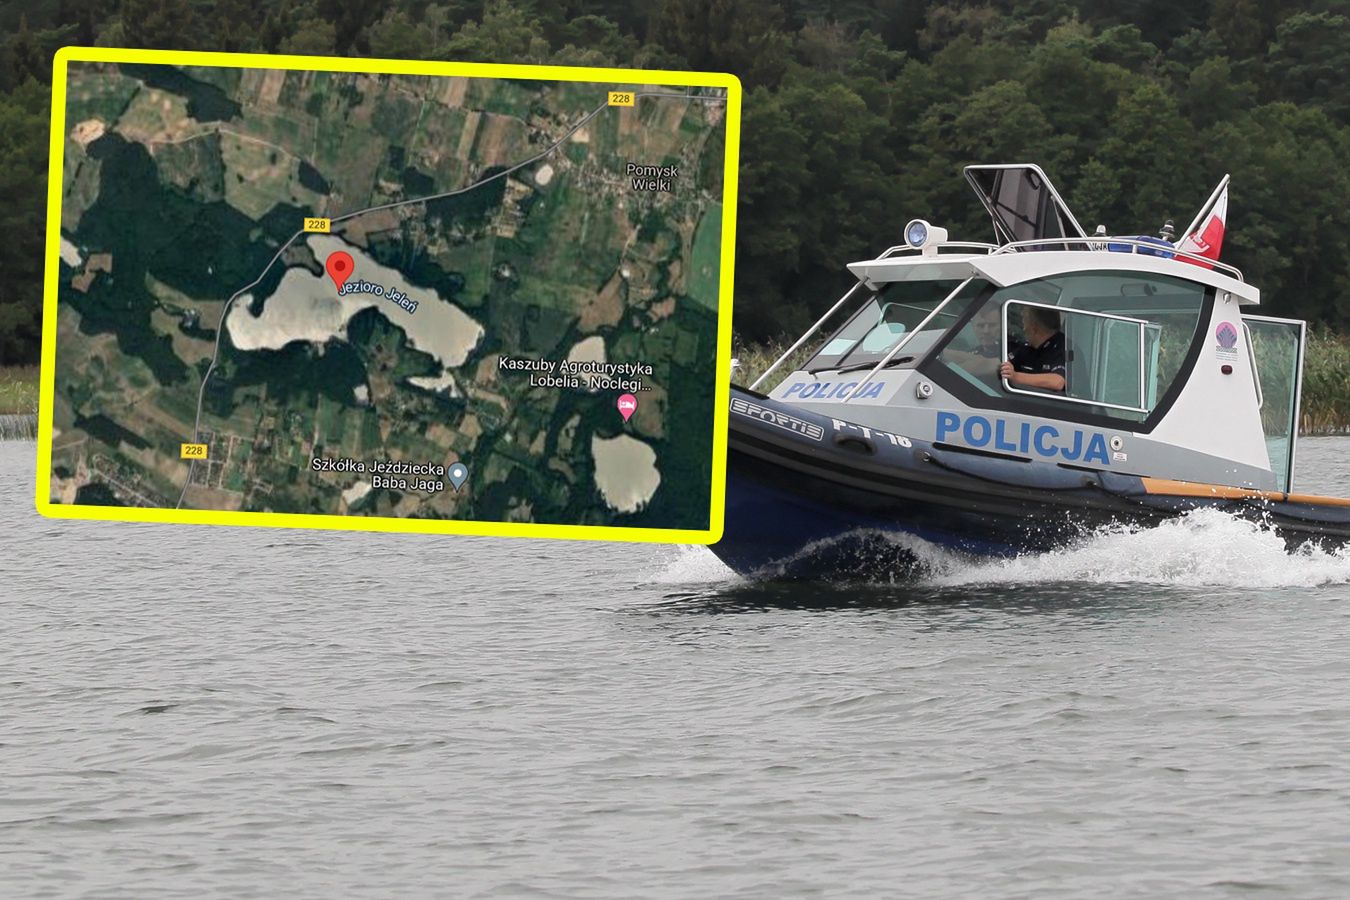 69-latek utonął w jeziorze. To było zabójstwo? Zatrzymano 4 osoby